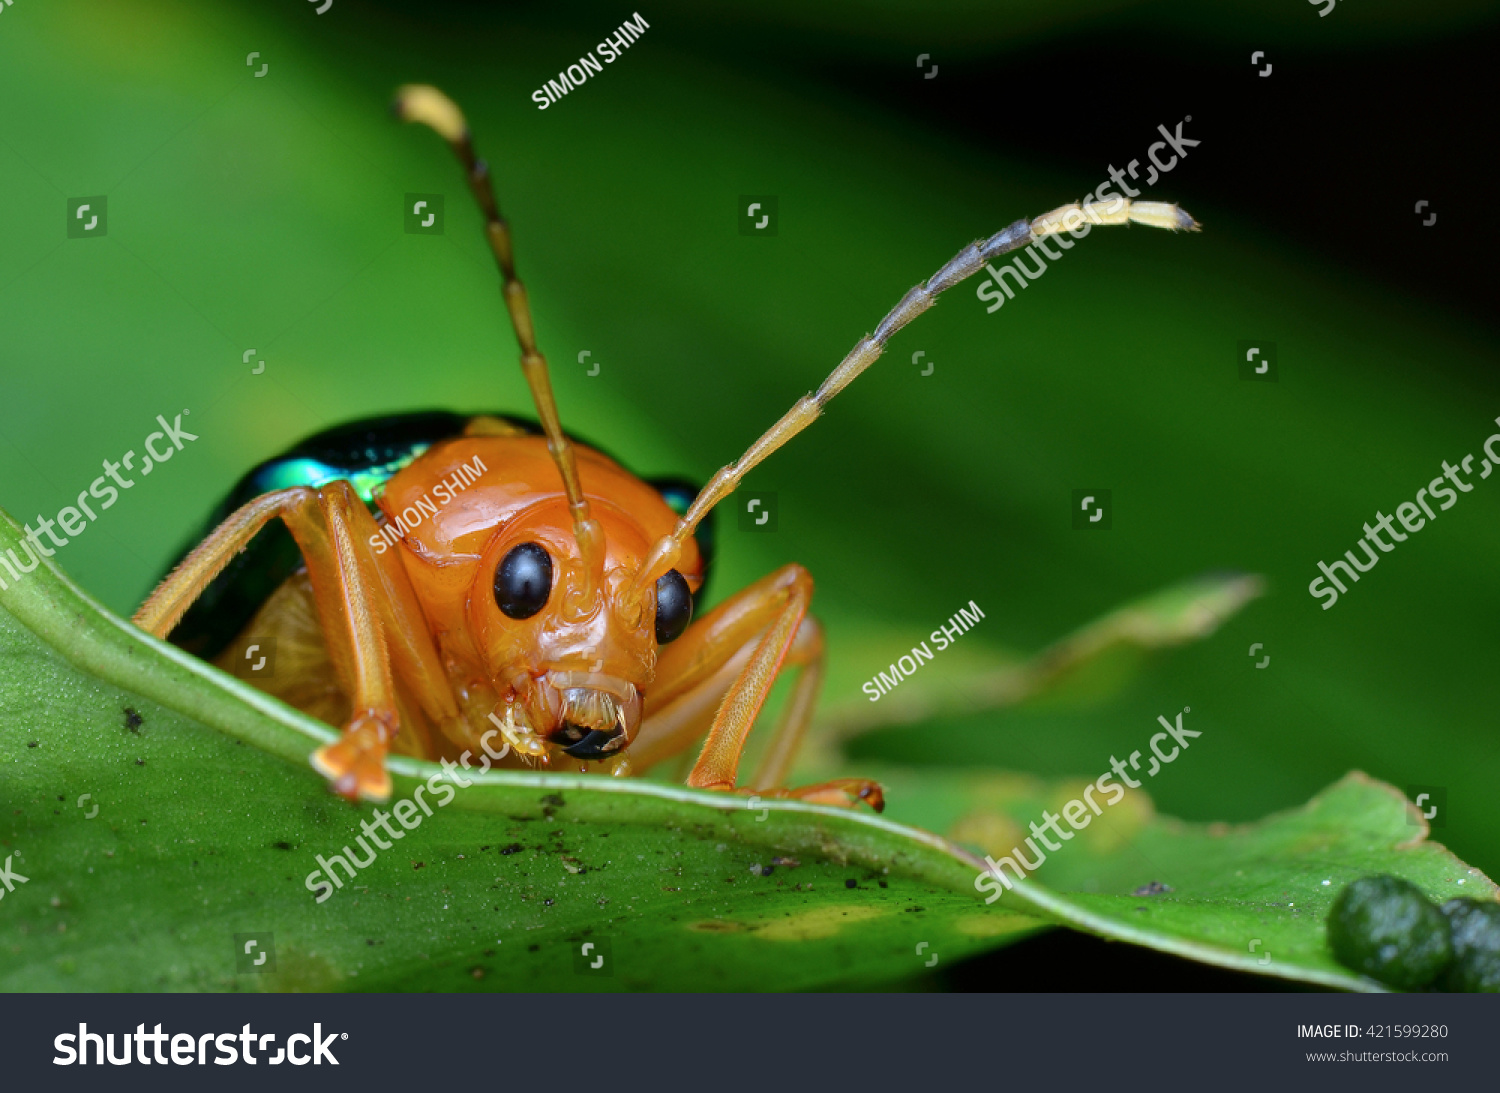 shiny leaf beetle #421599280